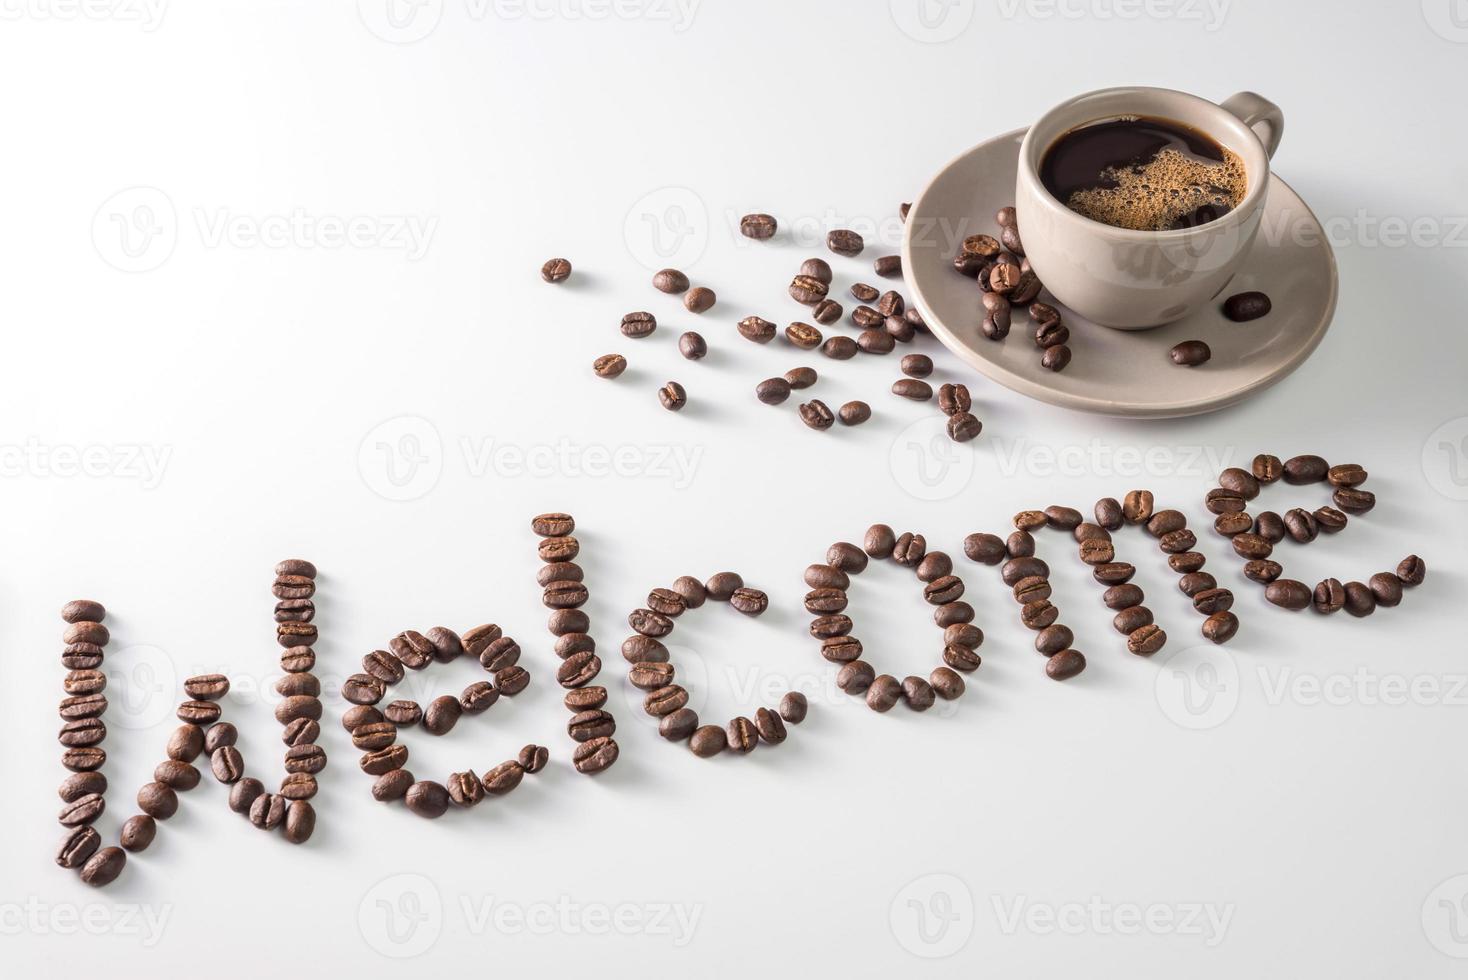 kaffekopp och text gjord av kaffebönor, isolerad på vitt. sms:a ordet välkommen gjord av kaffebönor. font foto